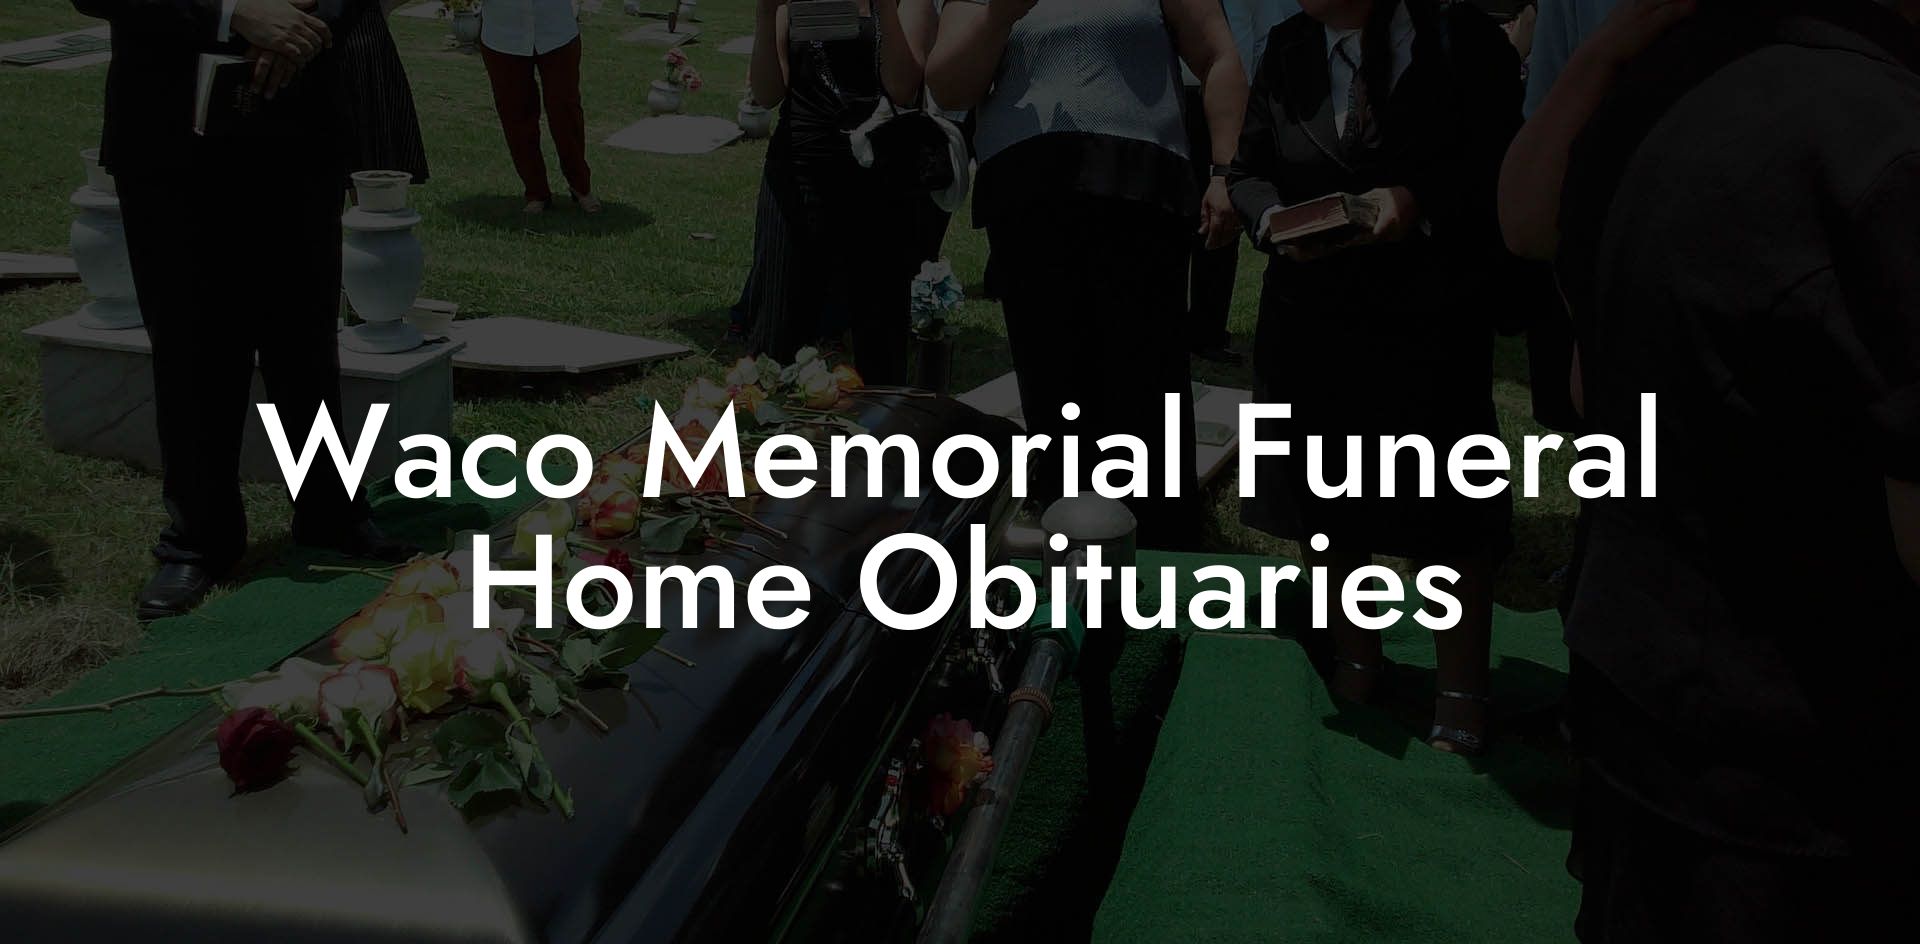 Waco Memorial Funeral Home Obituaries